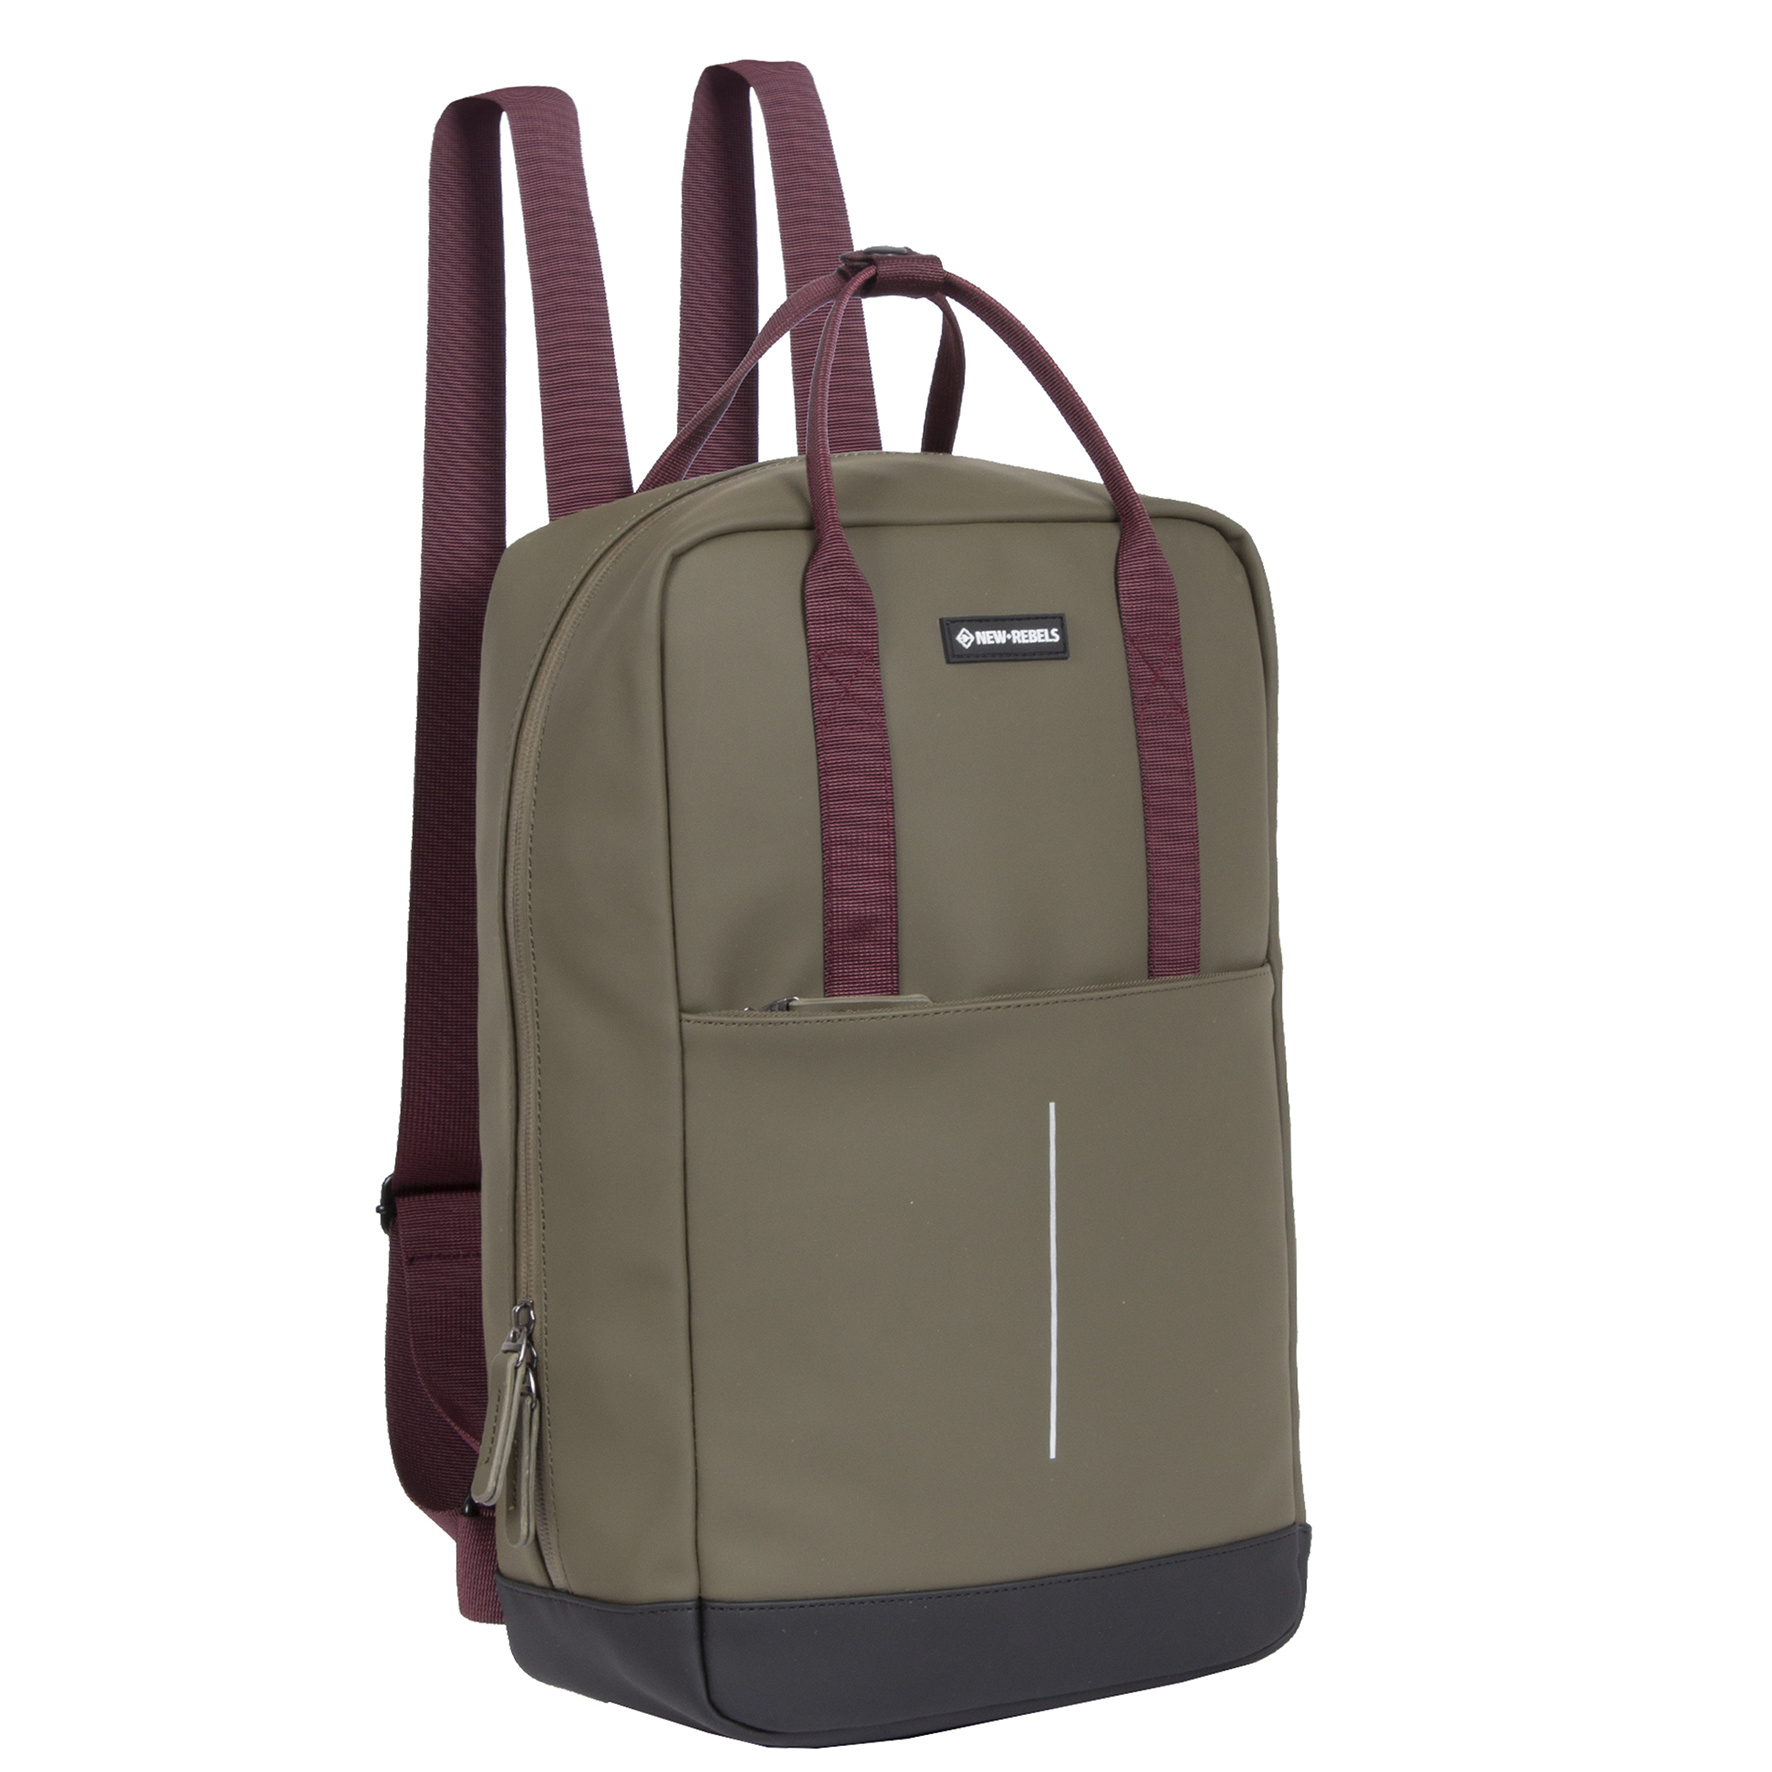 New Rebels® Julan - Rugtas - Waterbestendig - 42x12x28cm - Rugzak / Backpack